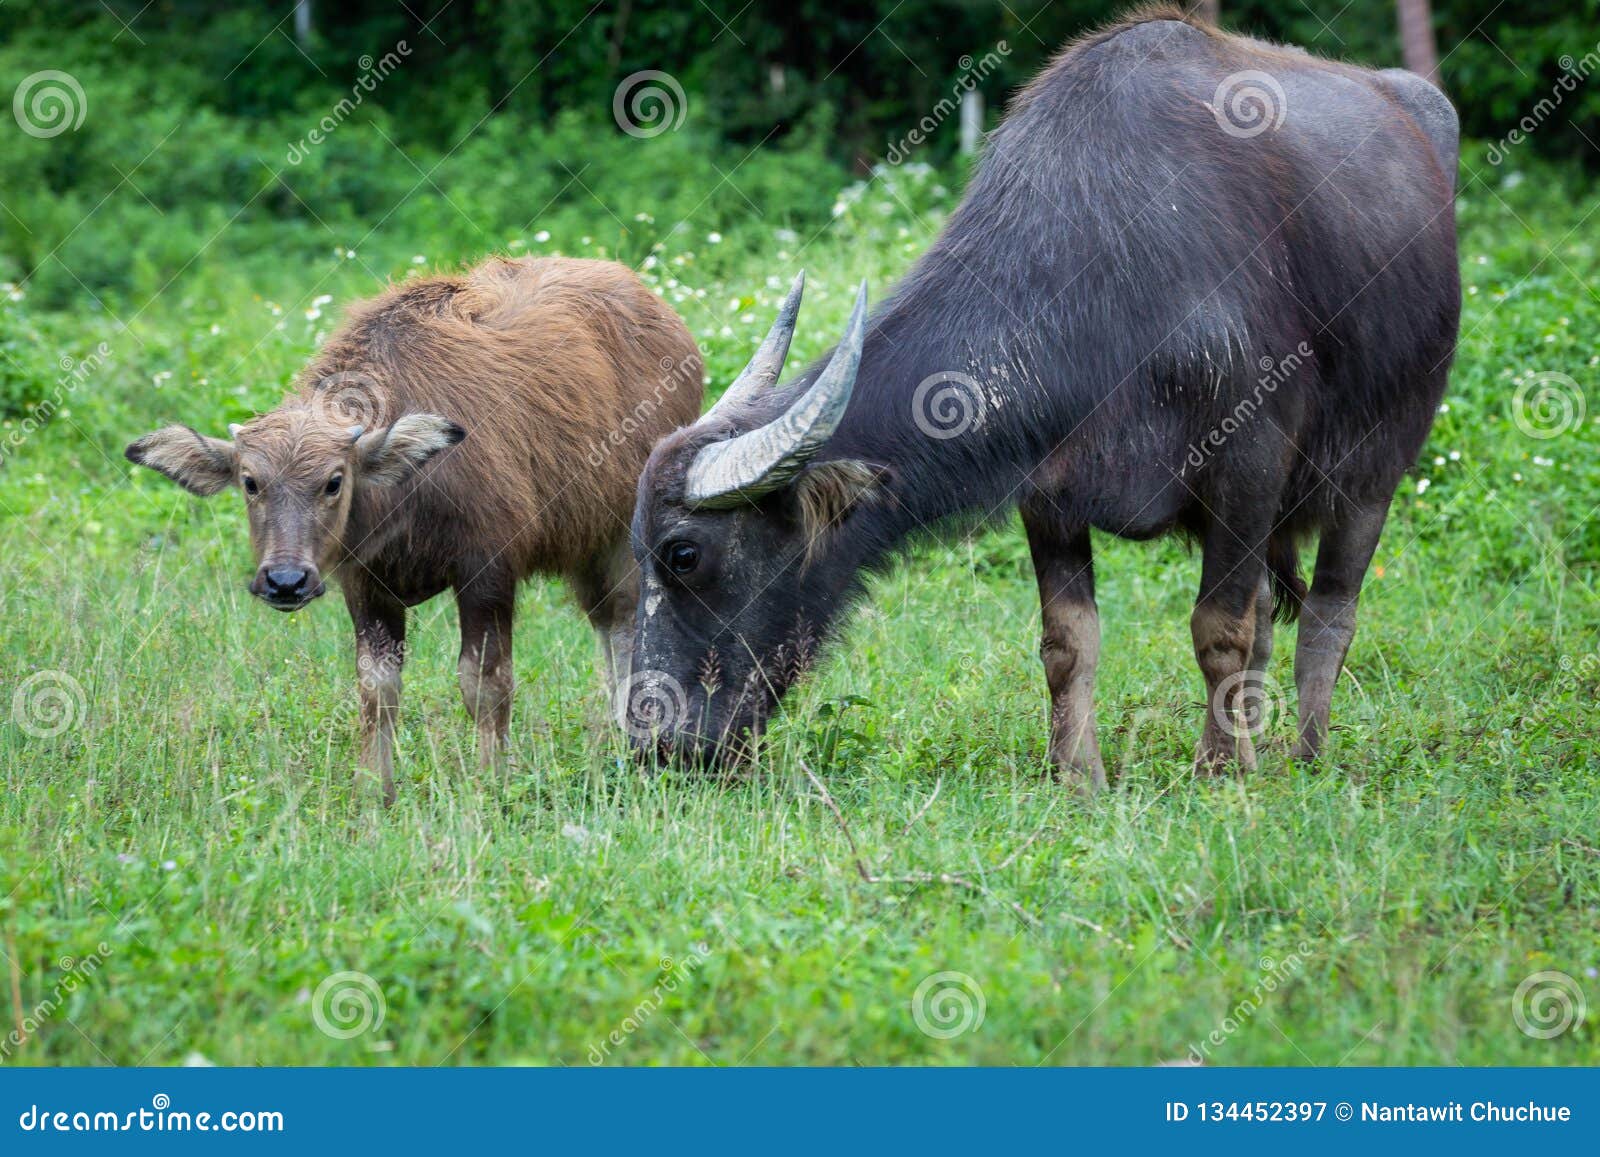 Mothers Buffalo